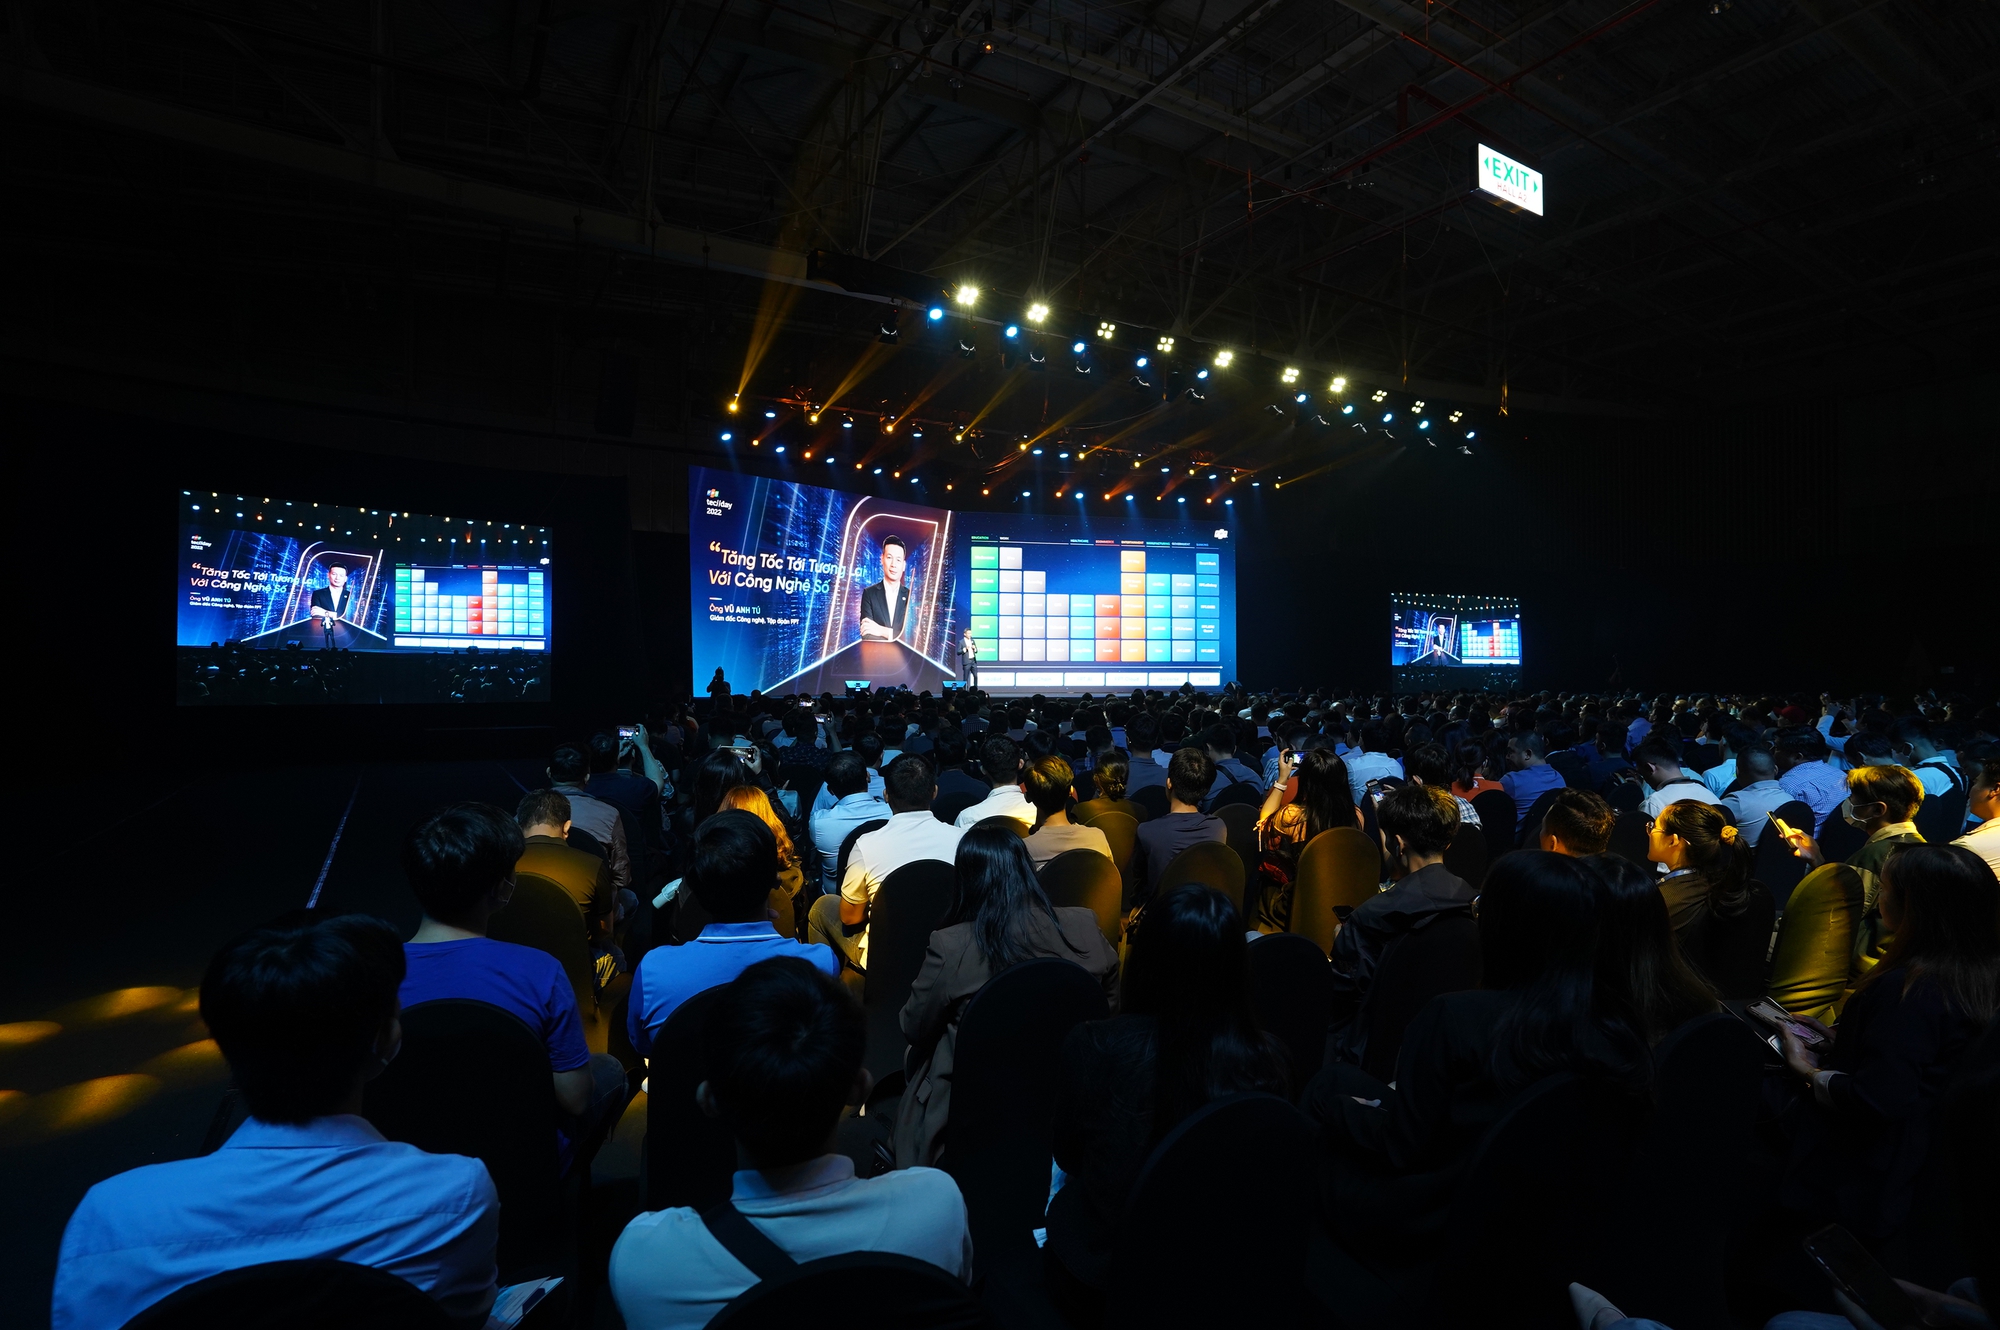 Hàng nghìn người tham dự sự kiện công nghệ lớn nhất năm của FPT - Ảnh 2.